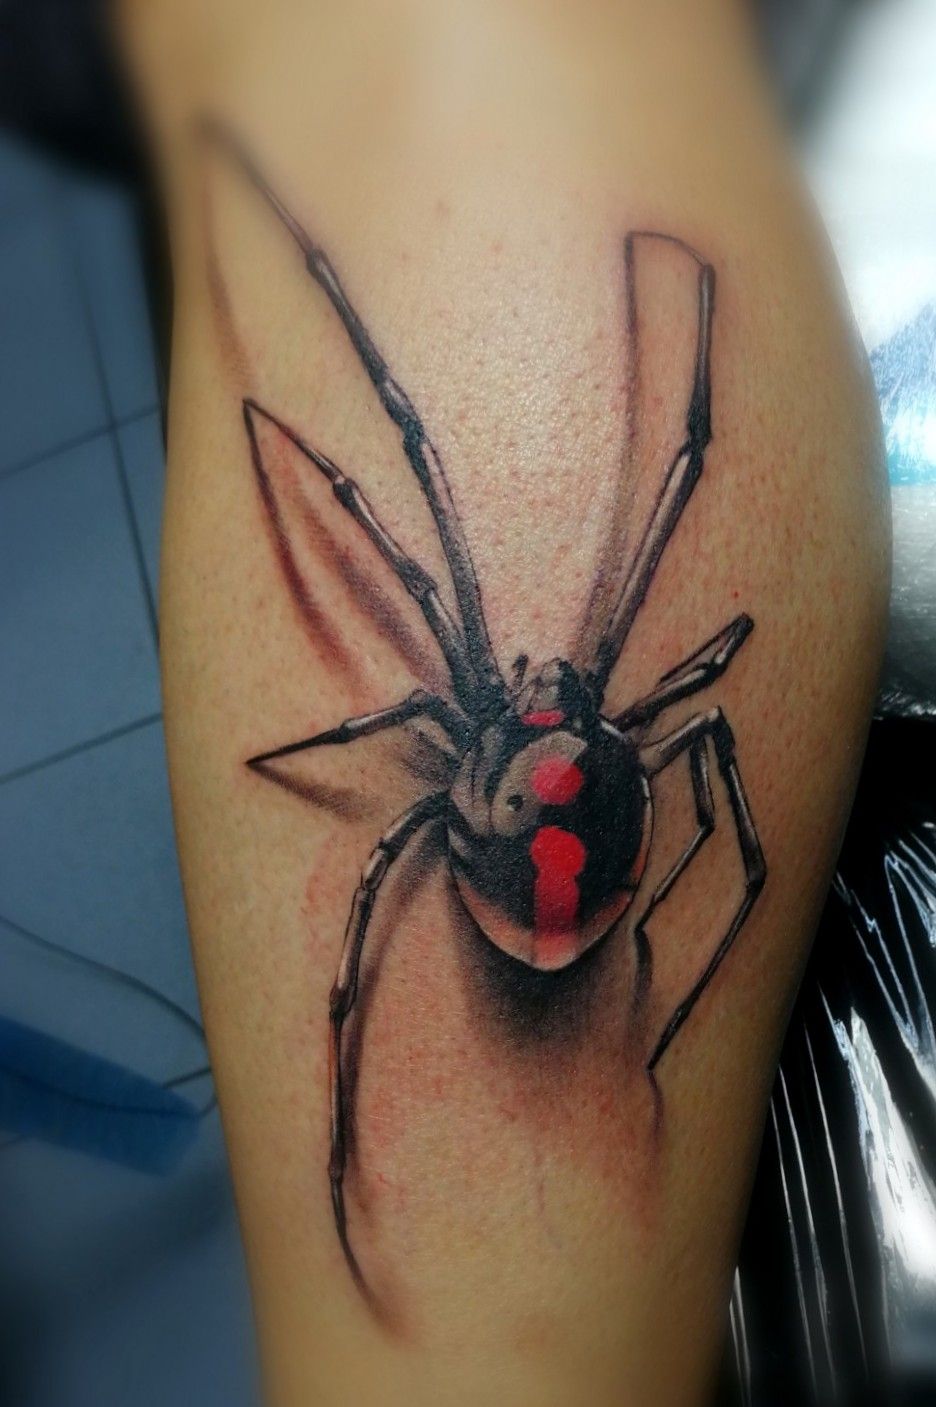 Black Widow tattoo by lapislazuri on DeviantArt